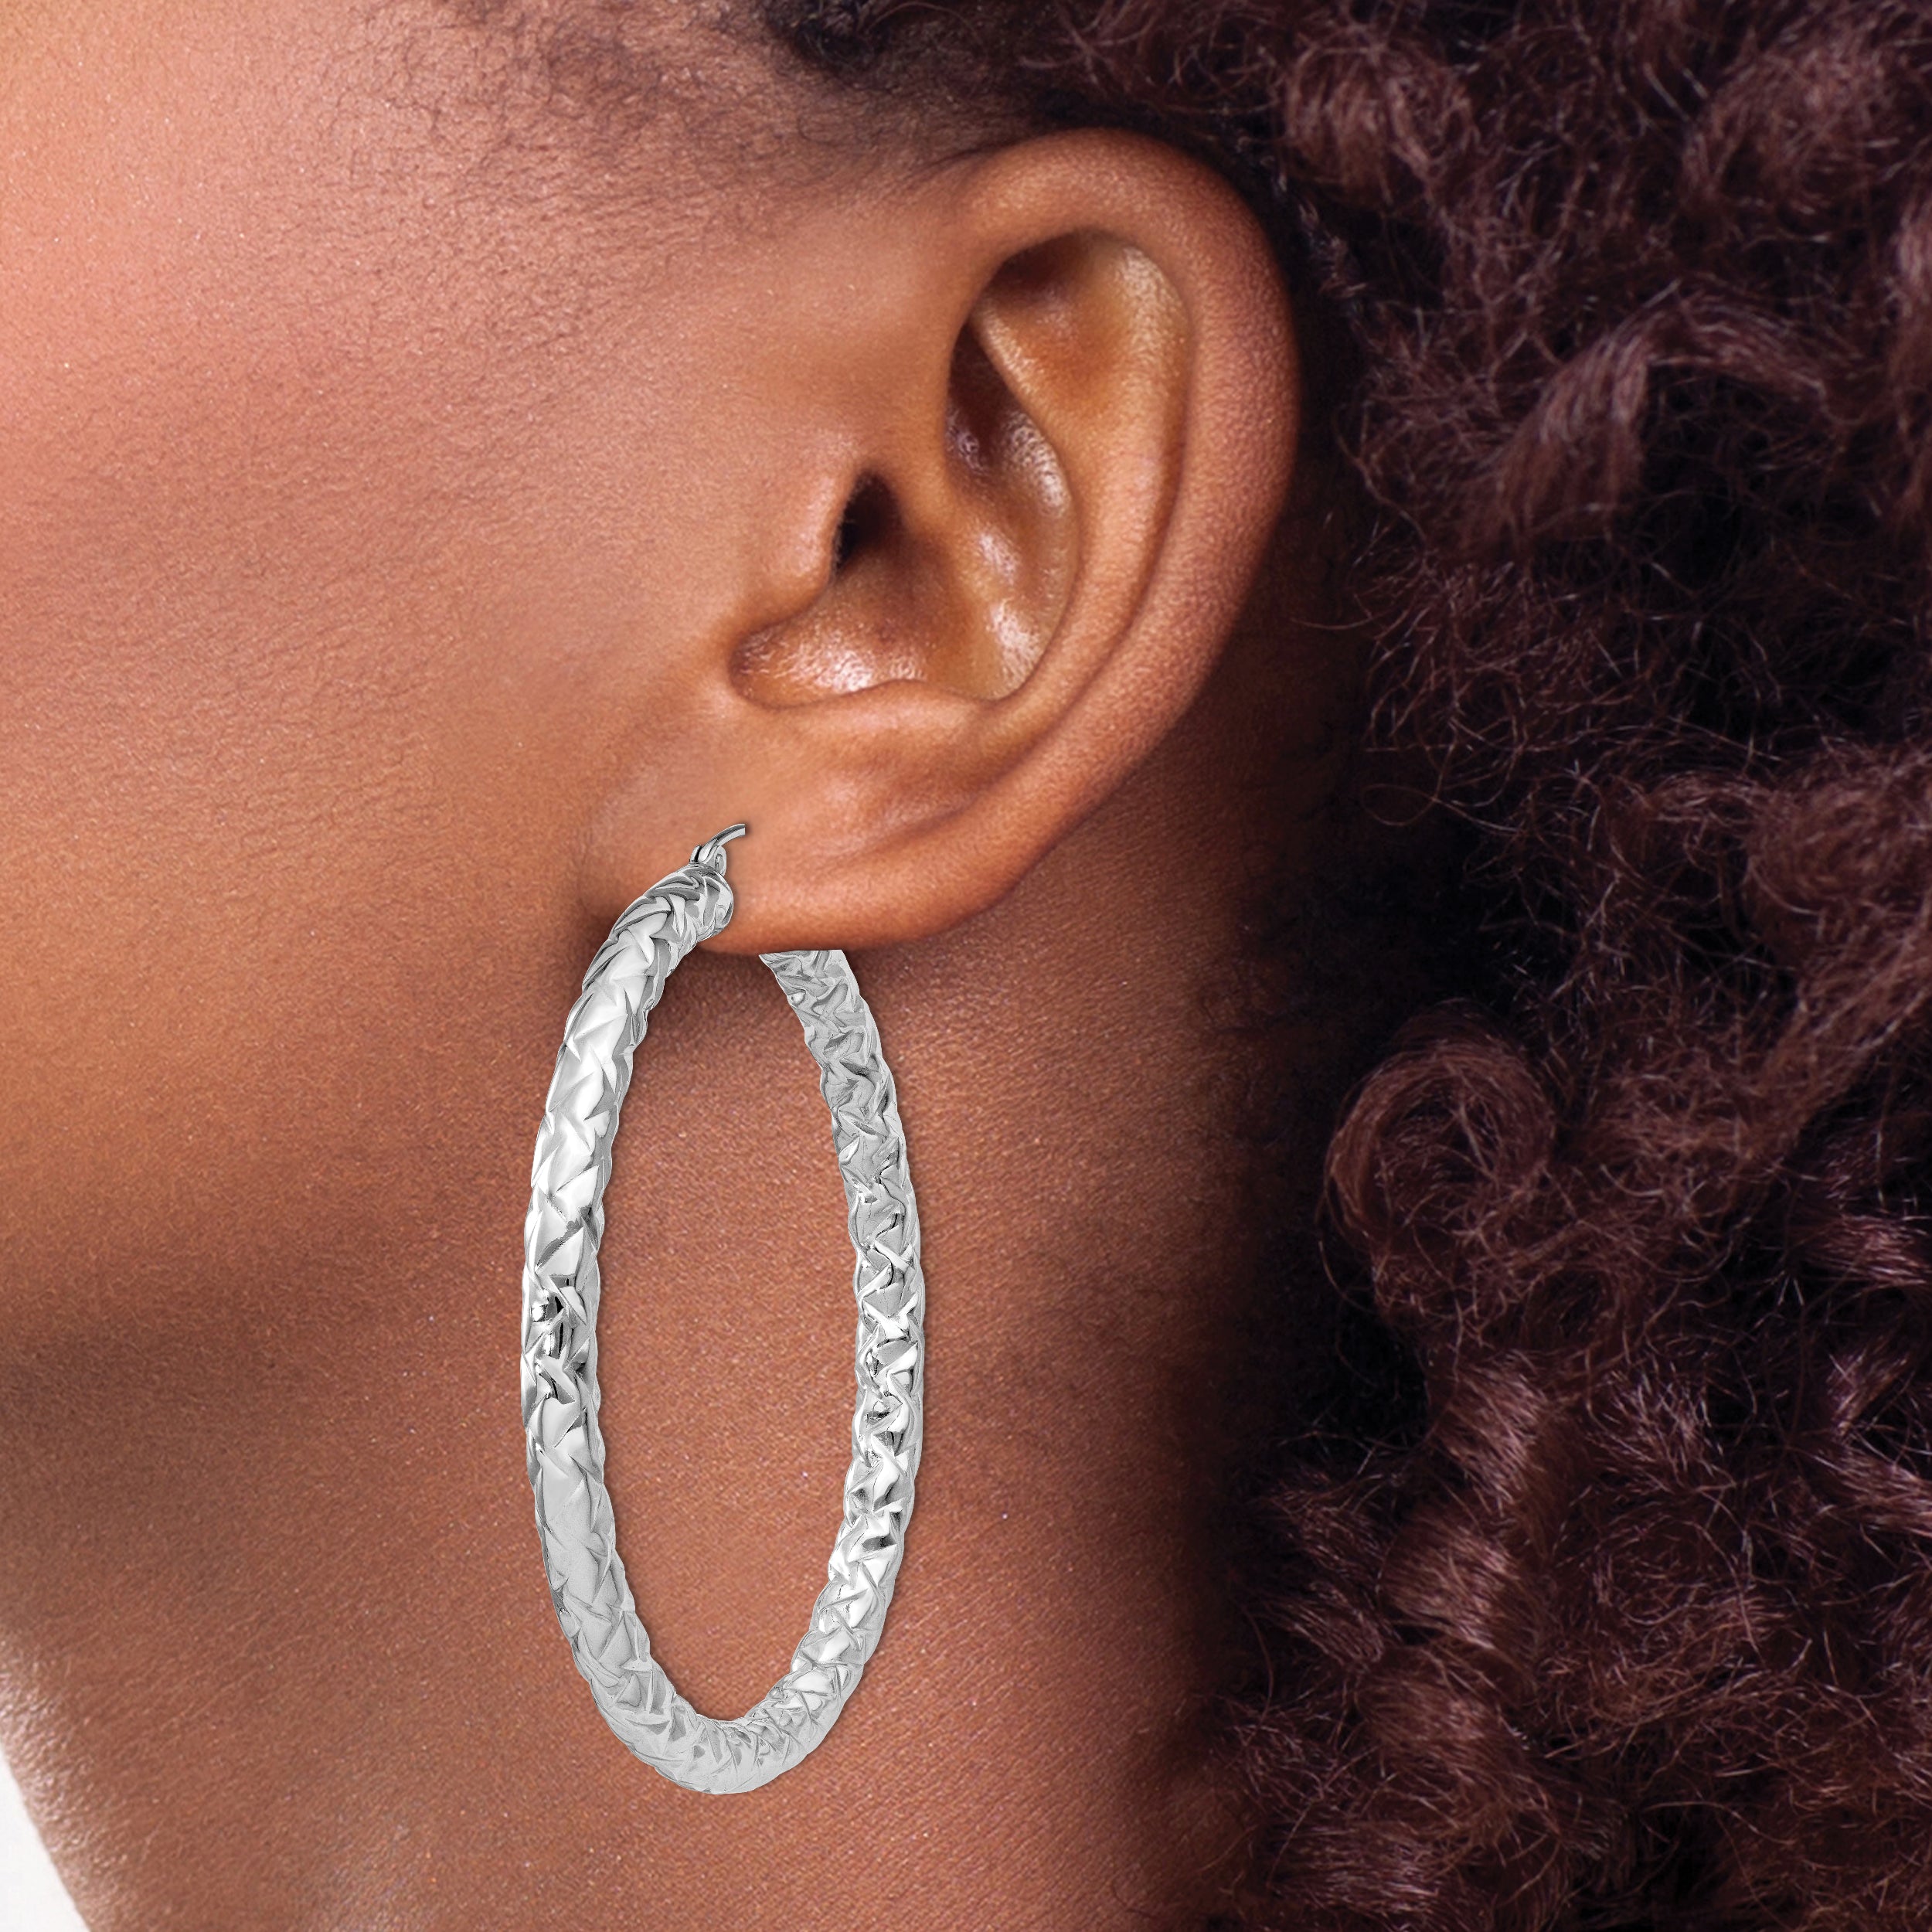 Sterling Silver Rhodium-plated Textured 4x50mm Hoop Earrings